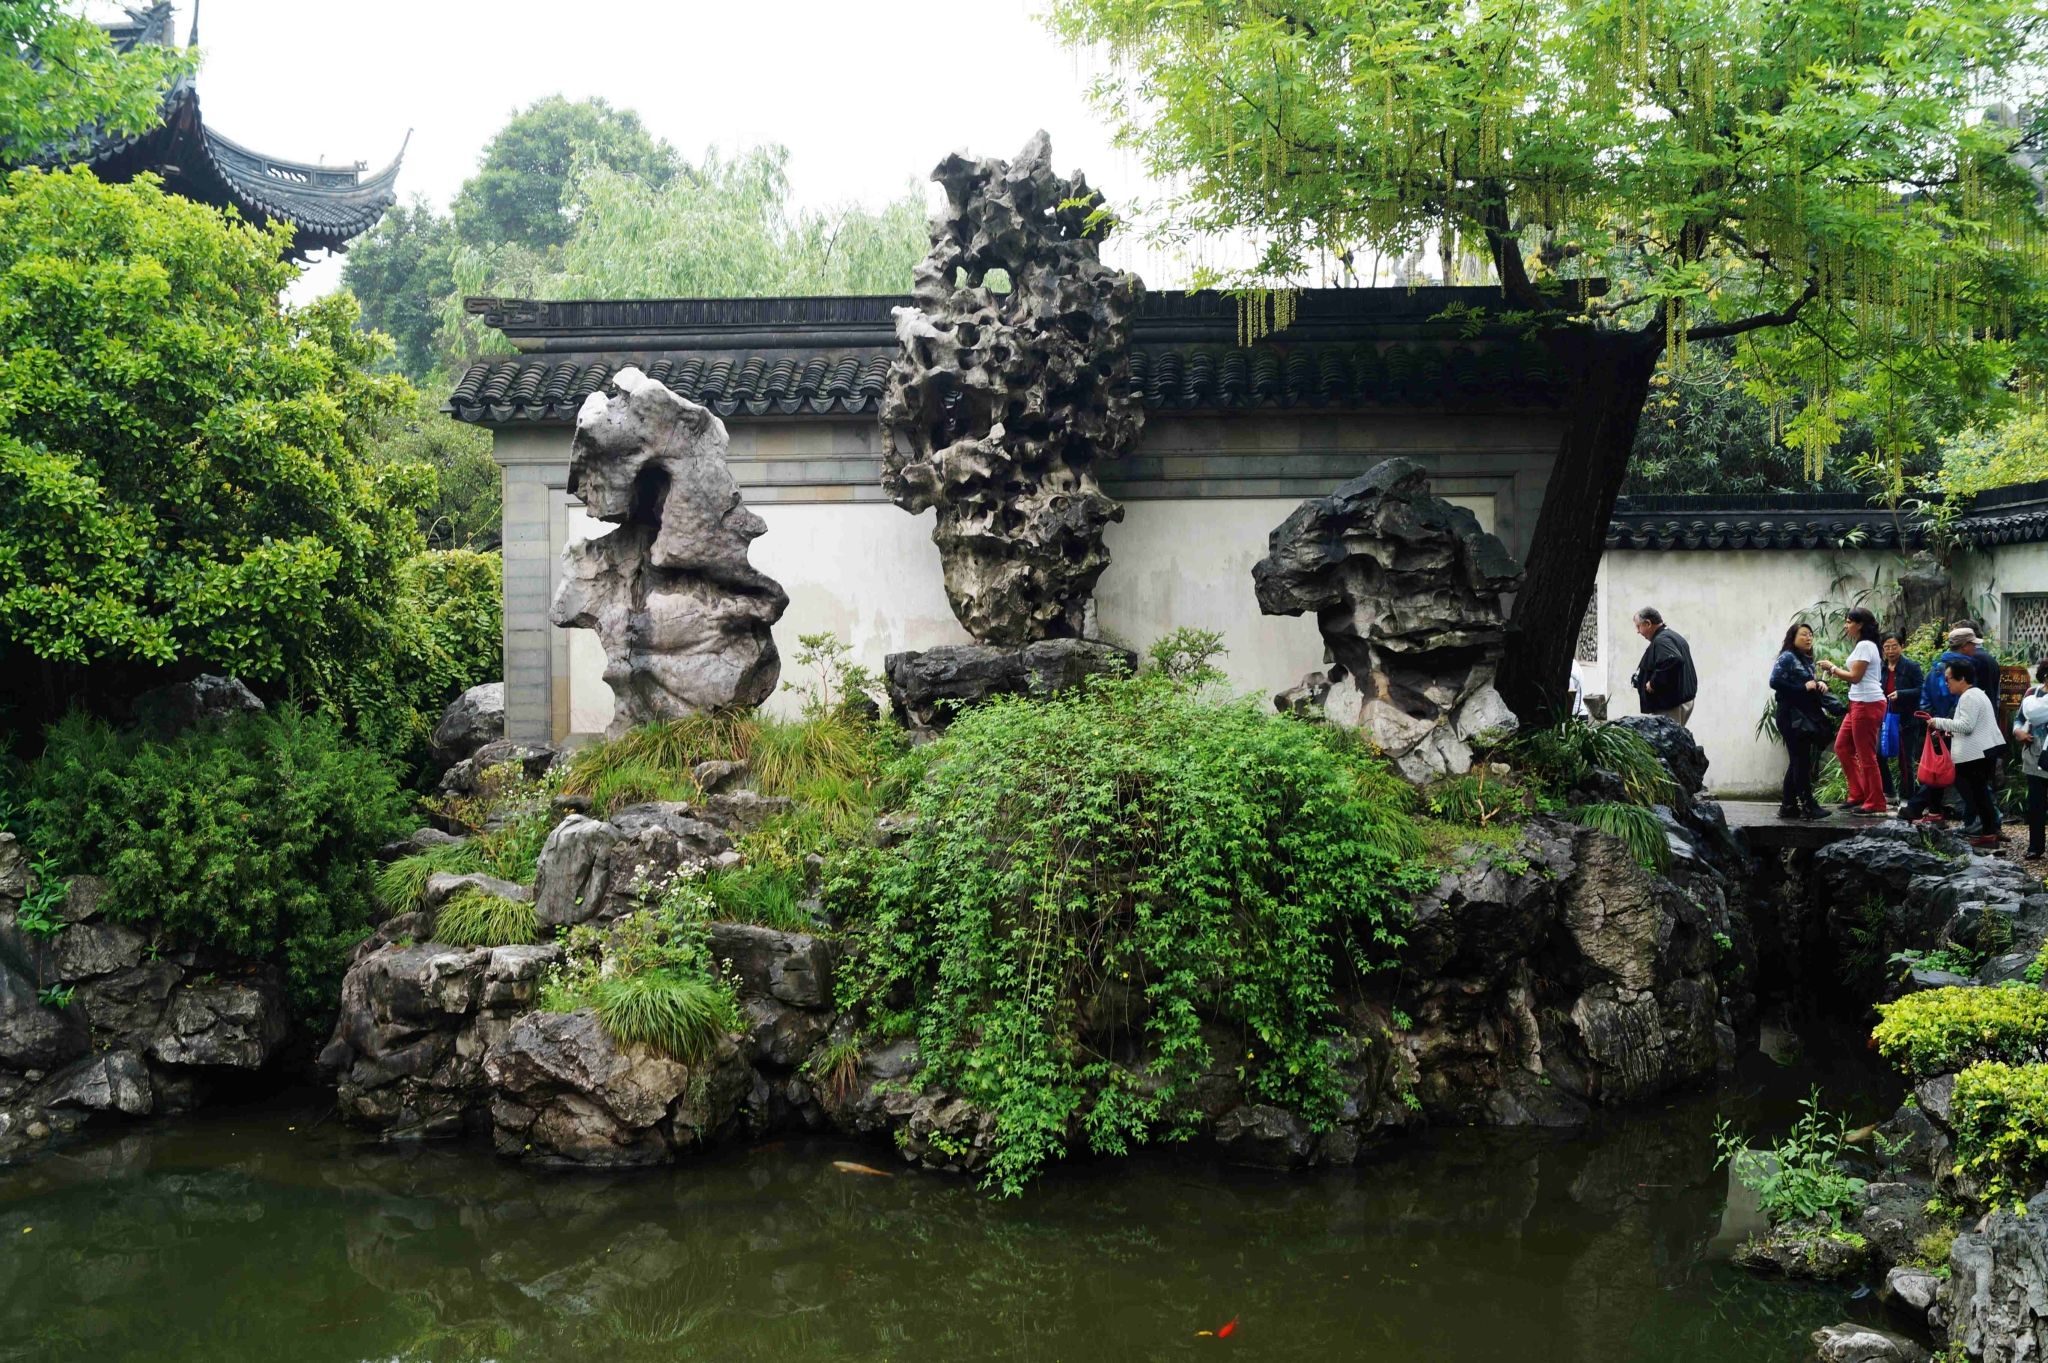 3,上海豫园"玉玲珑"假山 明嘉靖万历年间,园主潘允端经20余年经营始